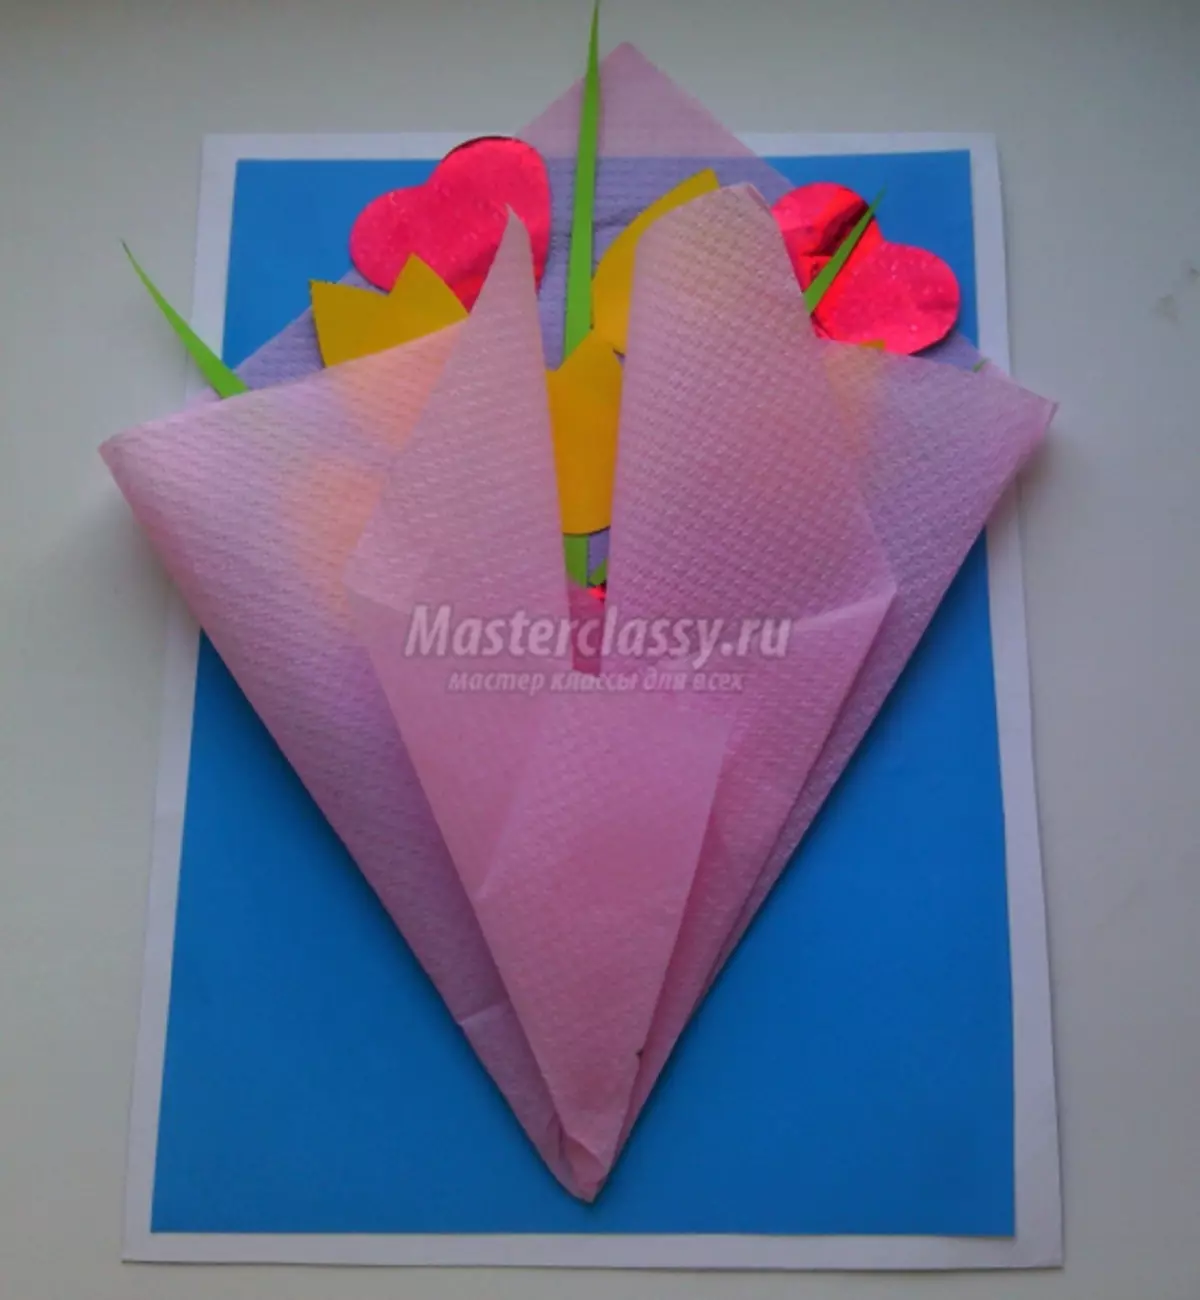 Како направити скупну папирну картицу са цвећем до 8. марта